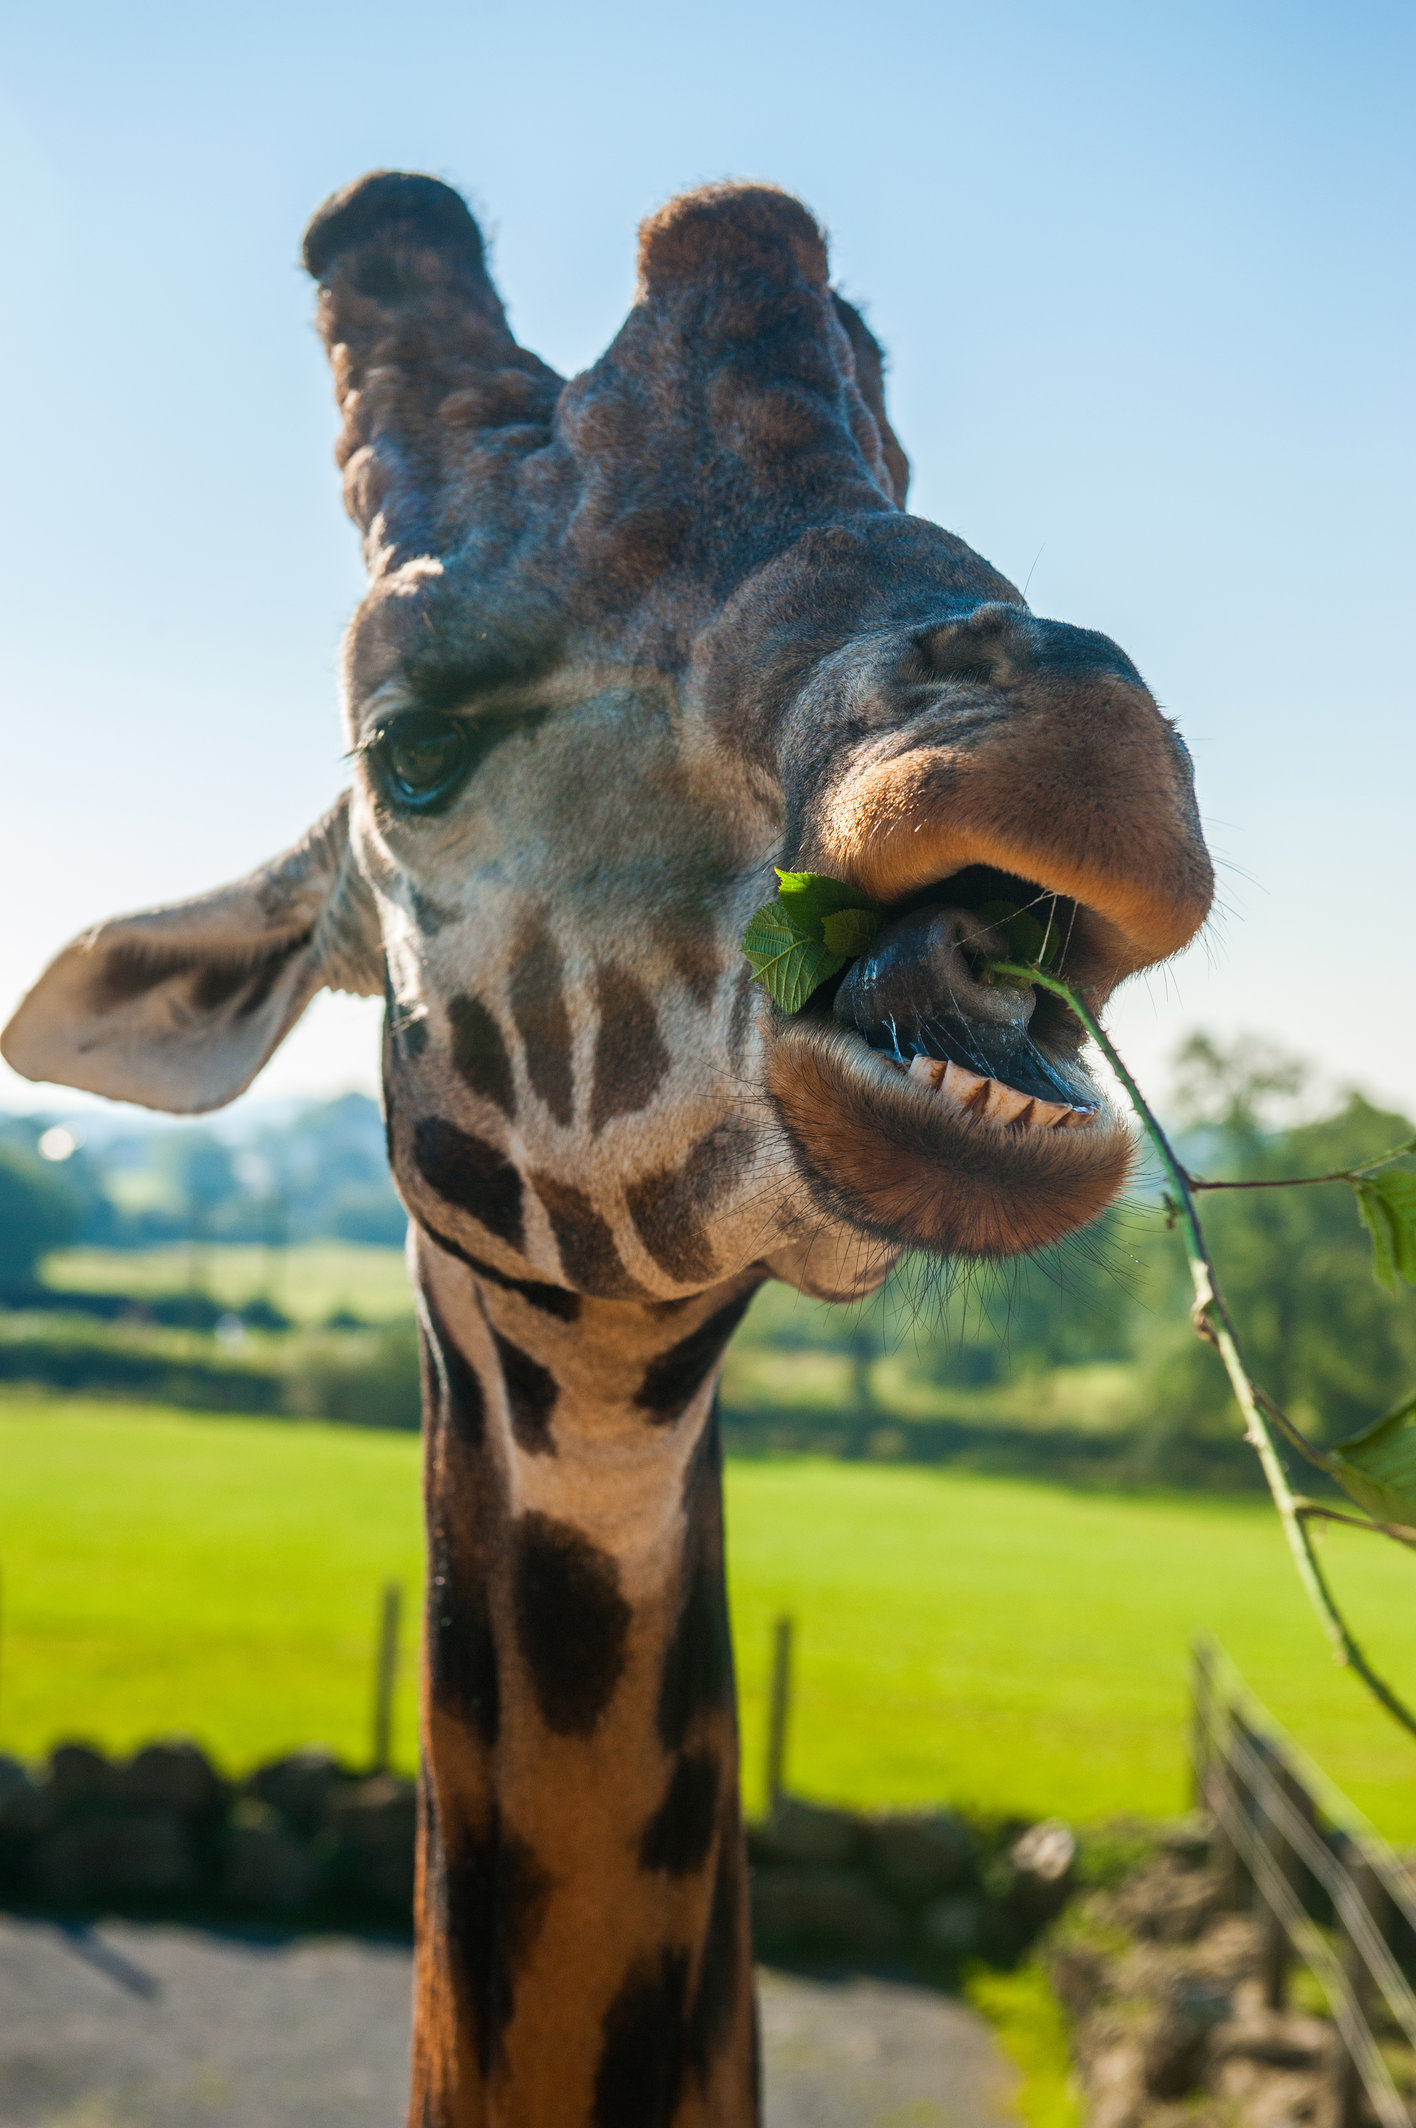 Giraffe feeding at Folly Farm